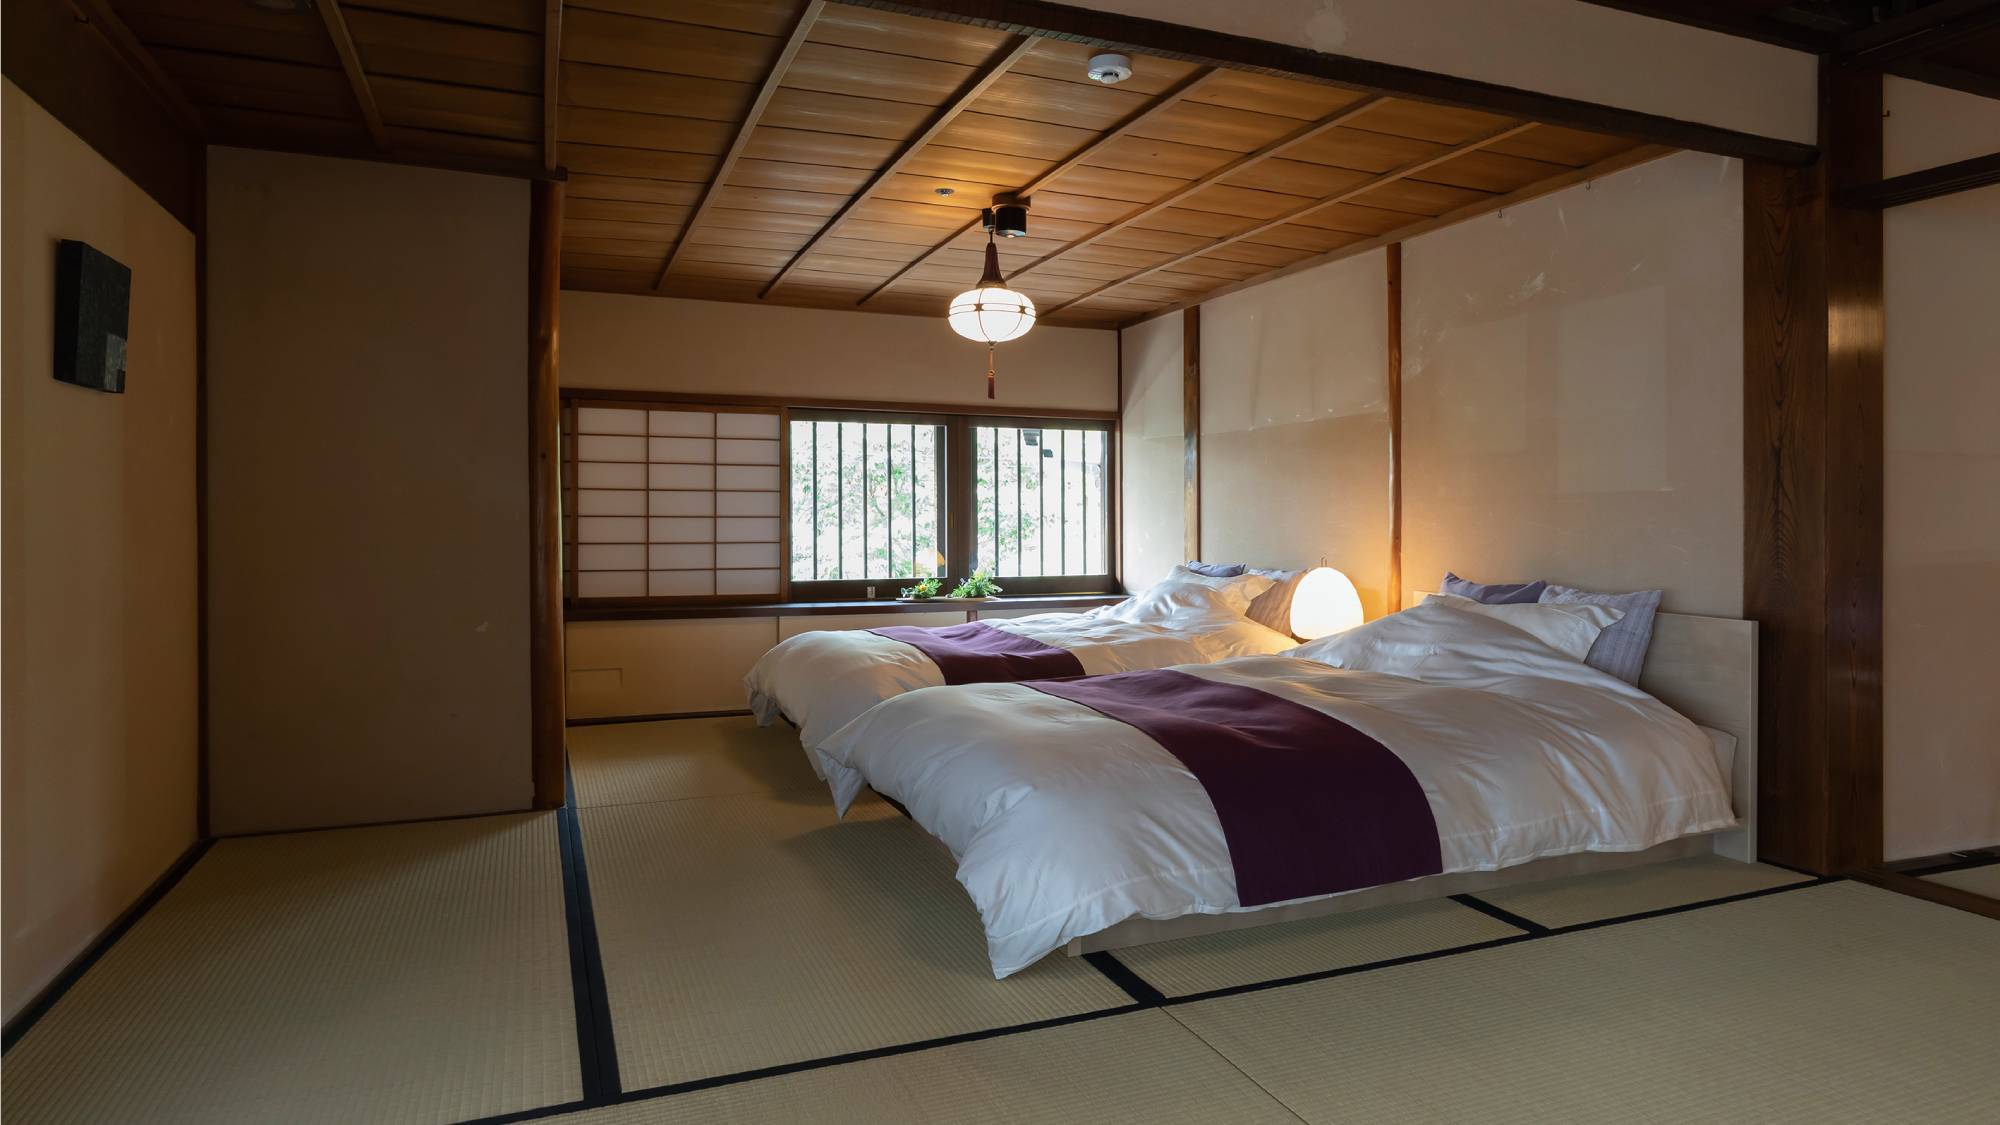 【外村宇兵衛邸】2階ベッドルーム①。近江商人が発祥とされる西川産業の寝具を取り入れています。